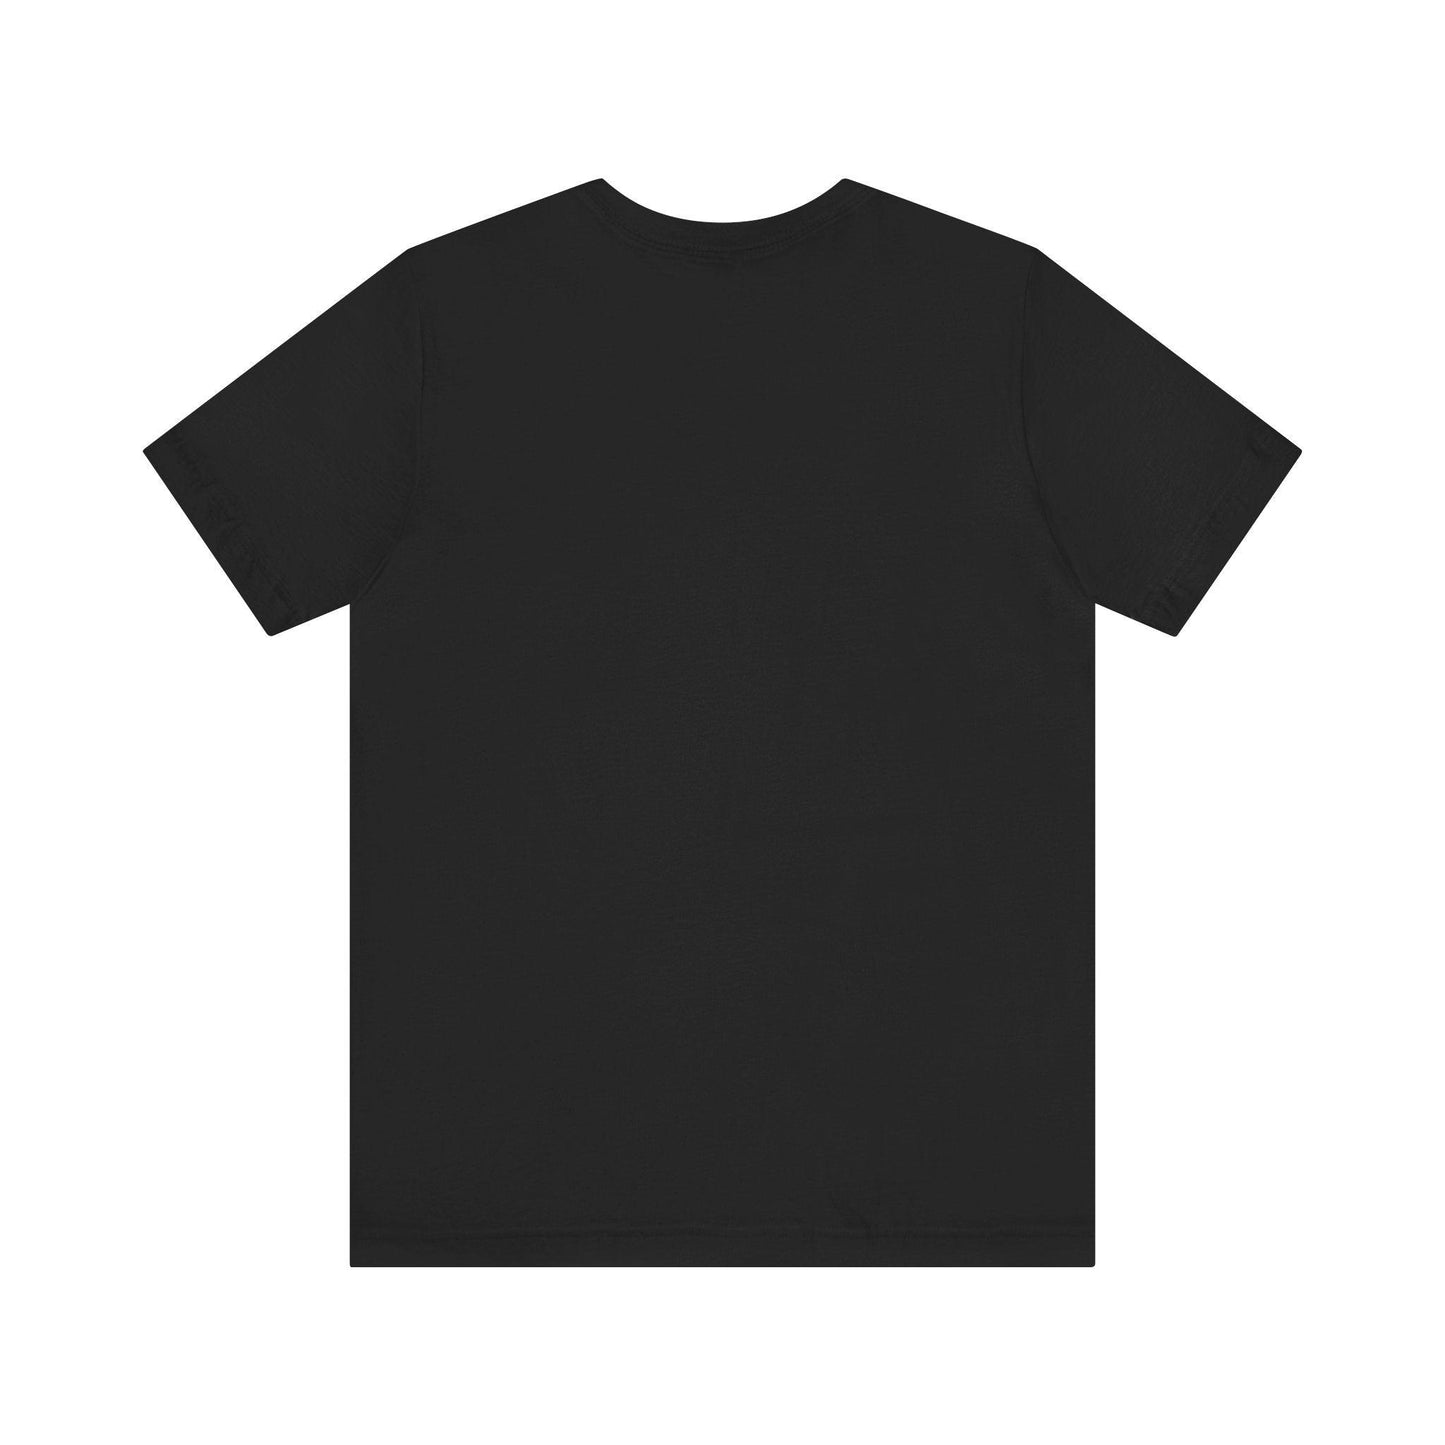 Unisex Jersey Short Sleeve Tee tiger design t shirt - MAK SHOP 